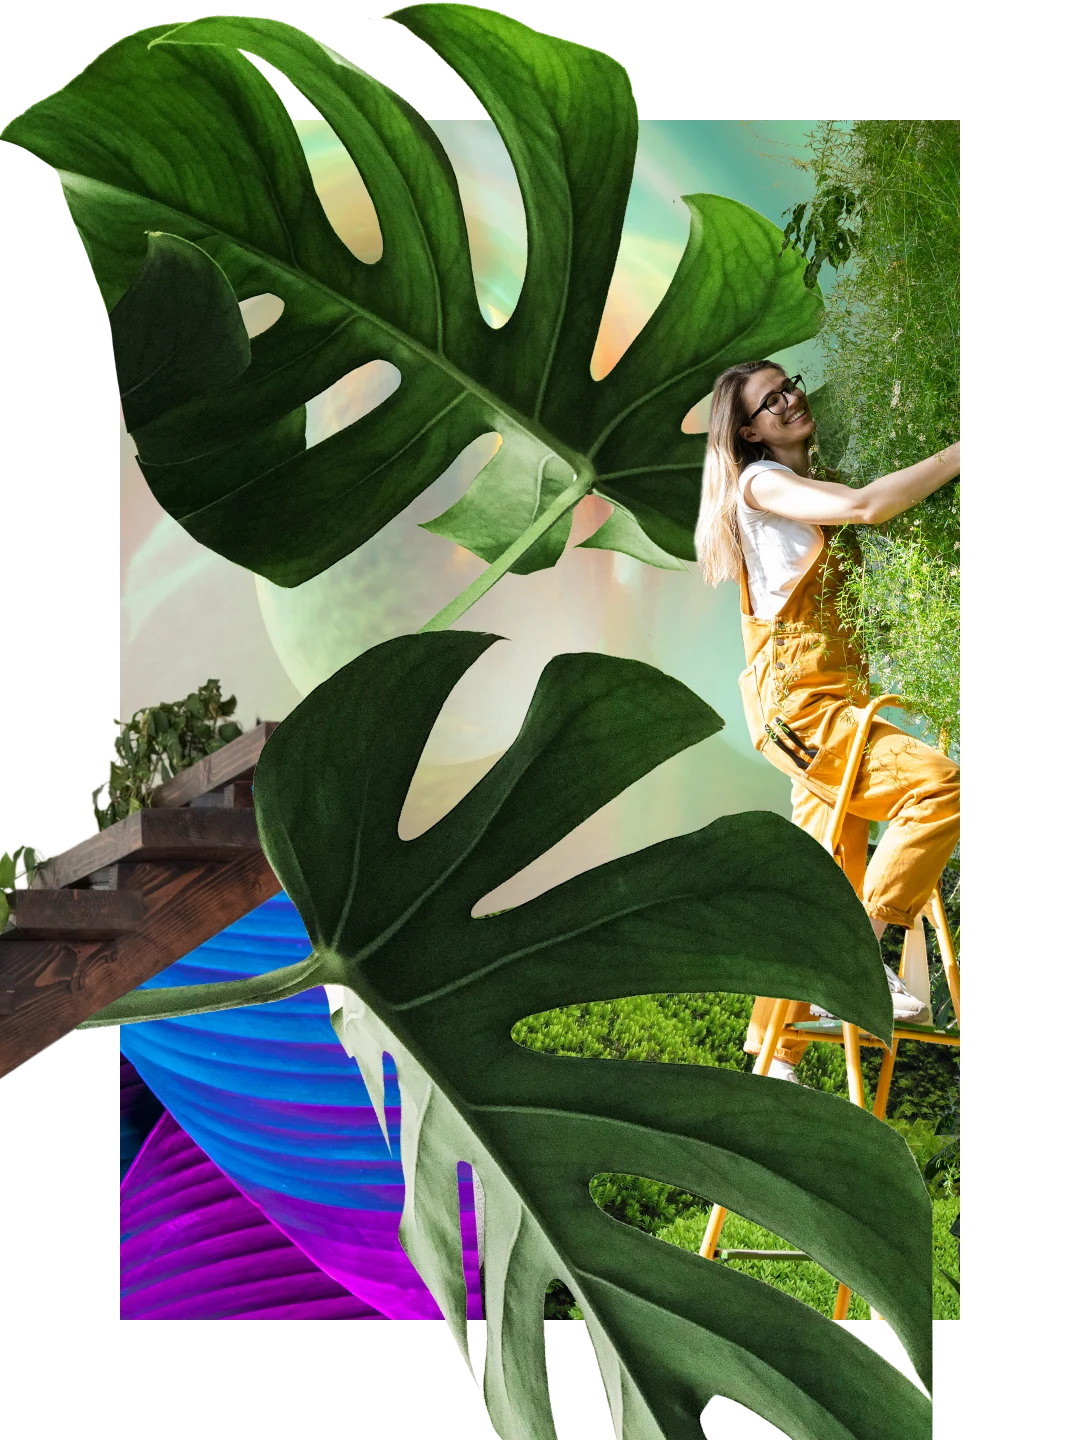 Colagem de plantas. Duas folhas grandes de costela-de-adão. Escadaria com folhagens ao fundo. Mulher branca usando macacão amarelo em uma escada cuidando de uma planta.
